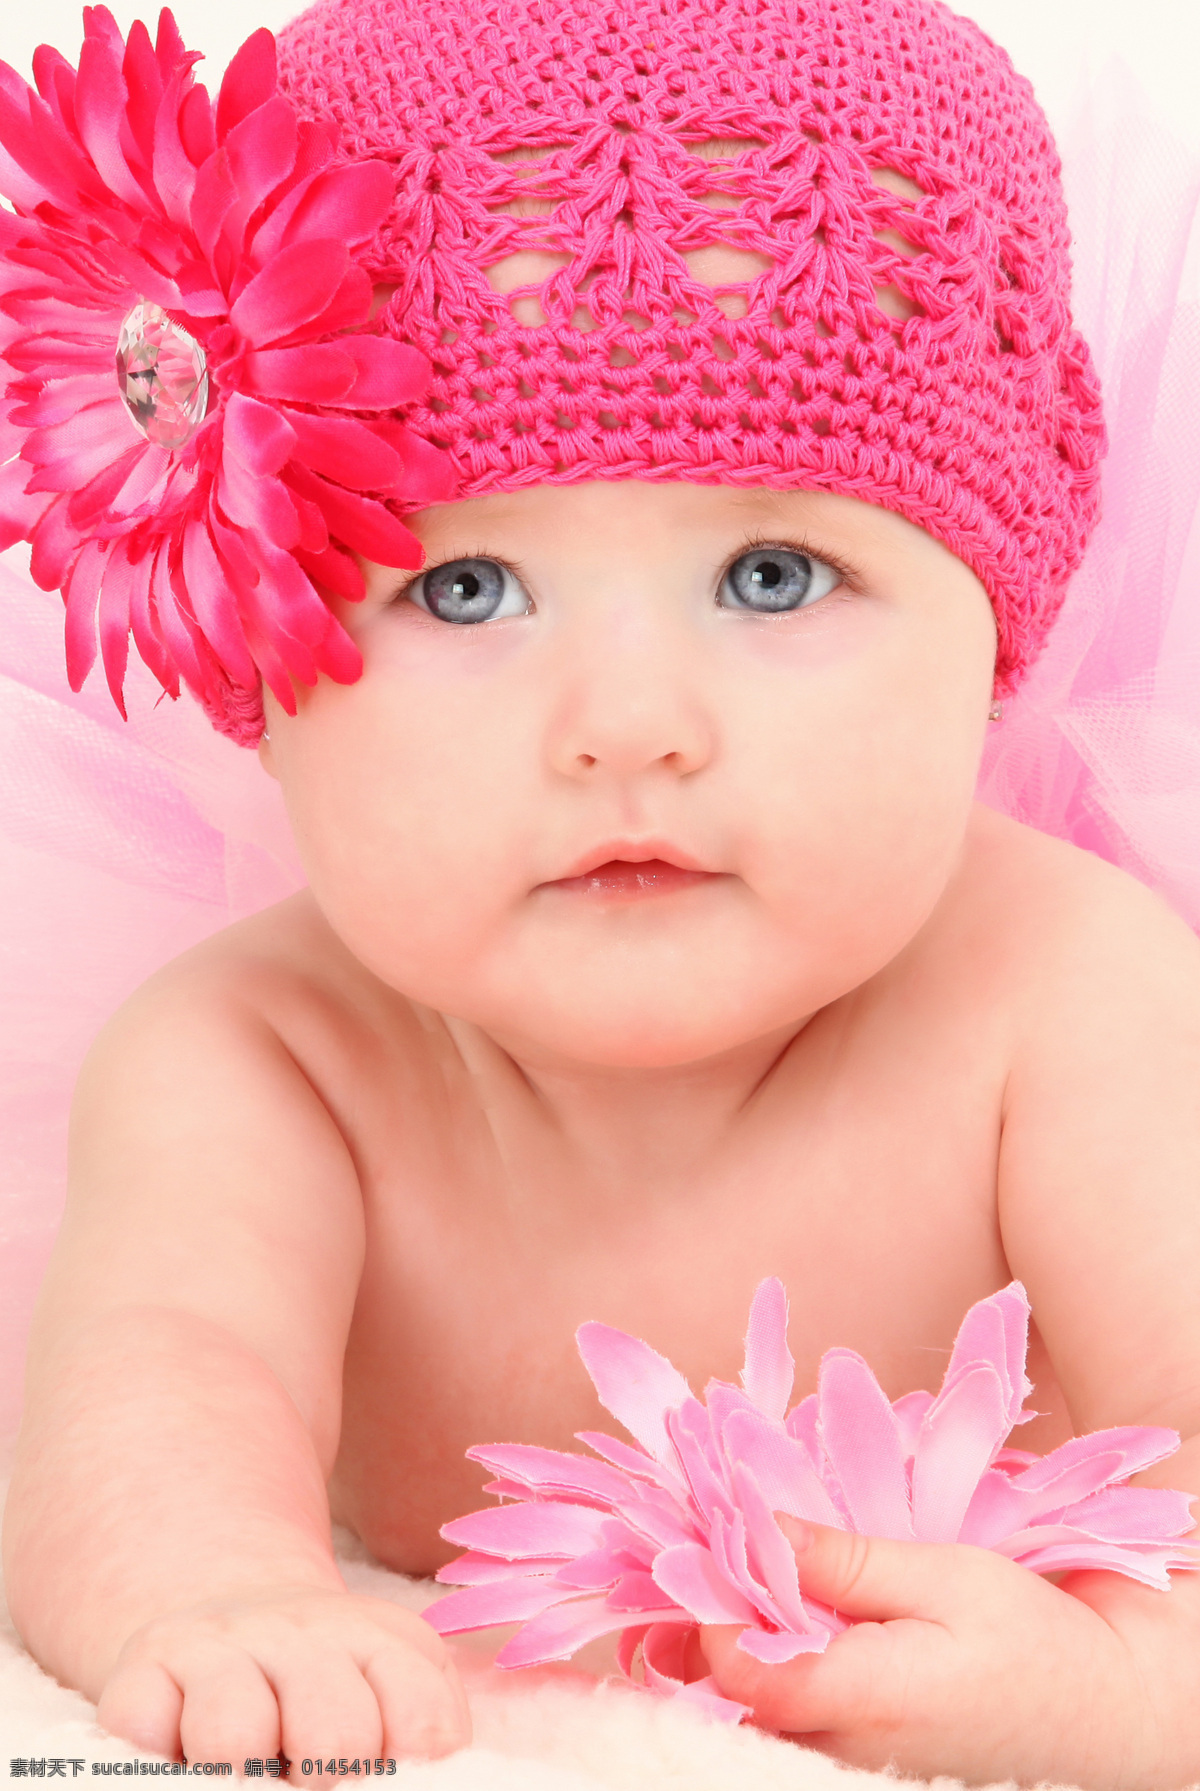 可爱 宝宝 baby 孩子 小孩 健康宝宝 帽子 花朵 儿童幼儿 宝宝图片 人物图片